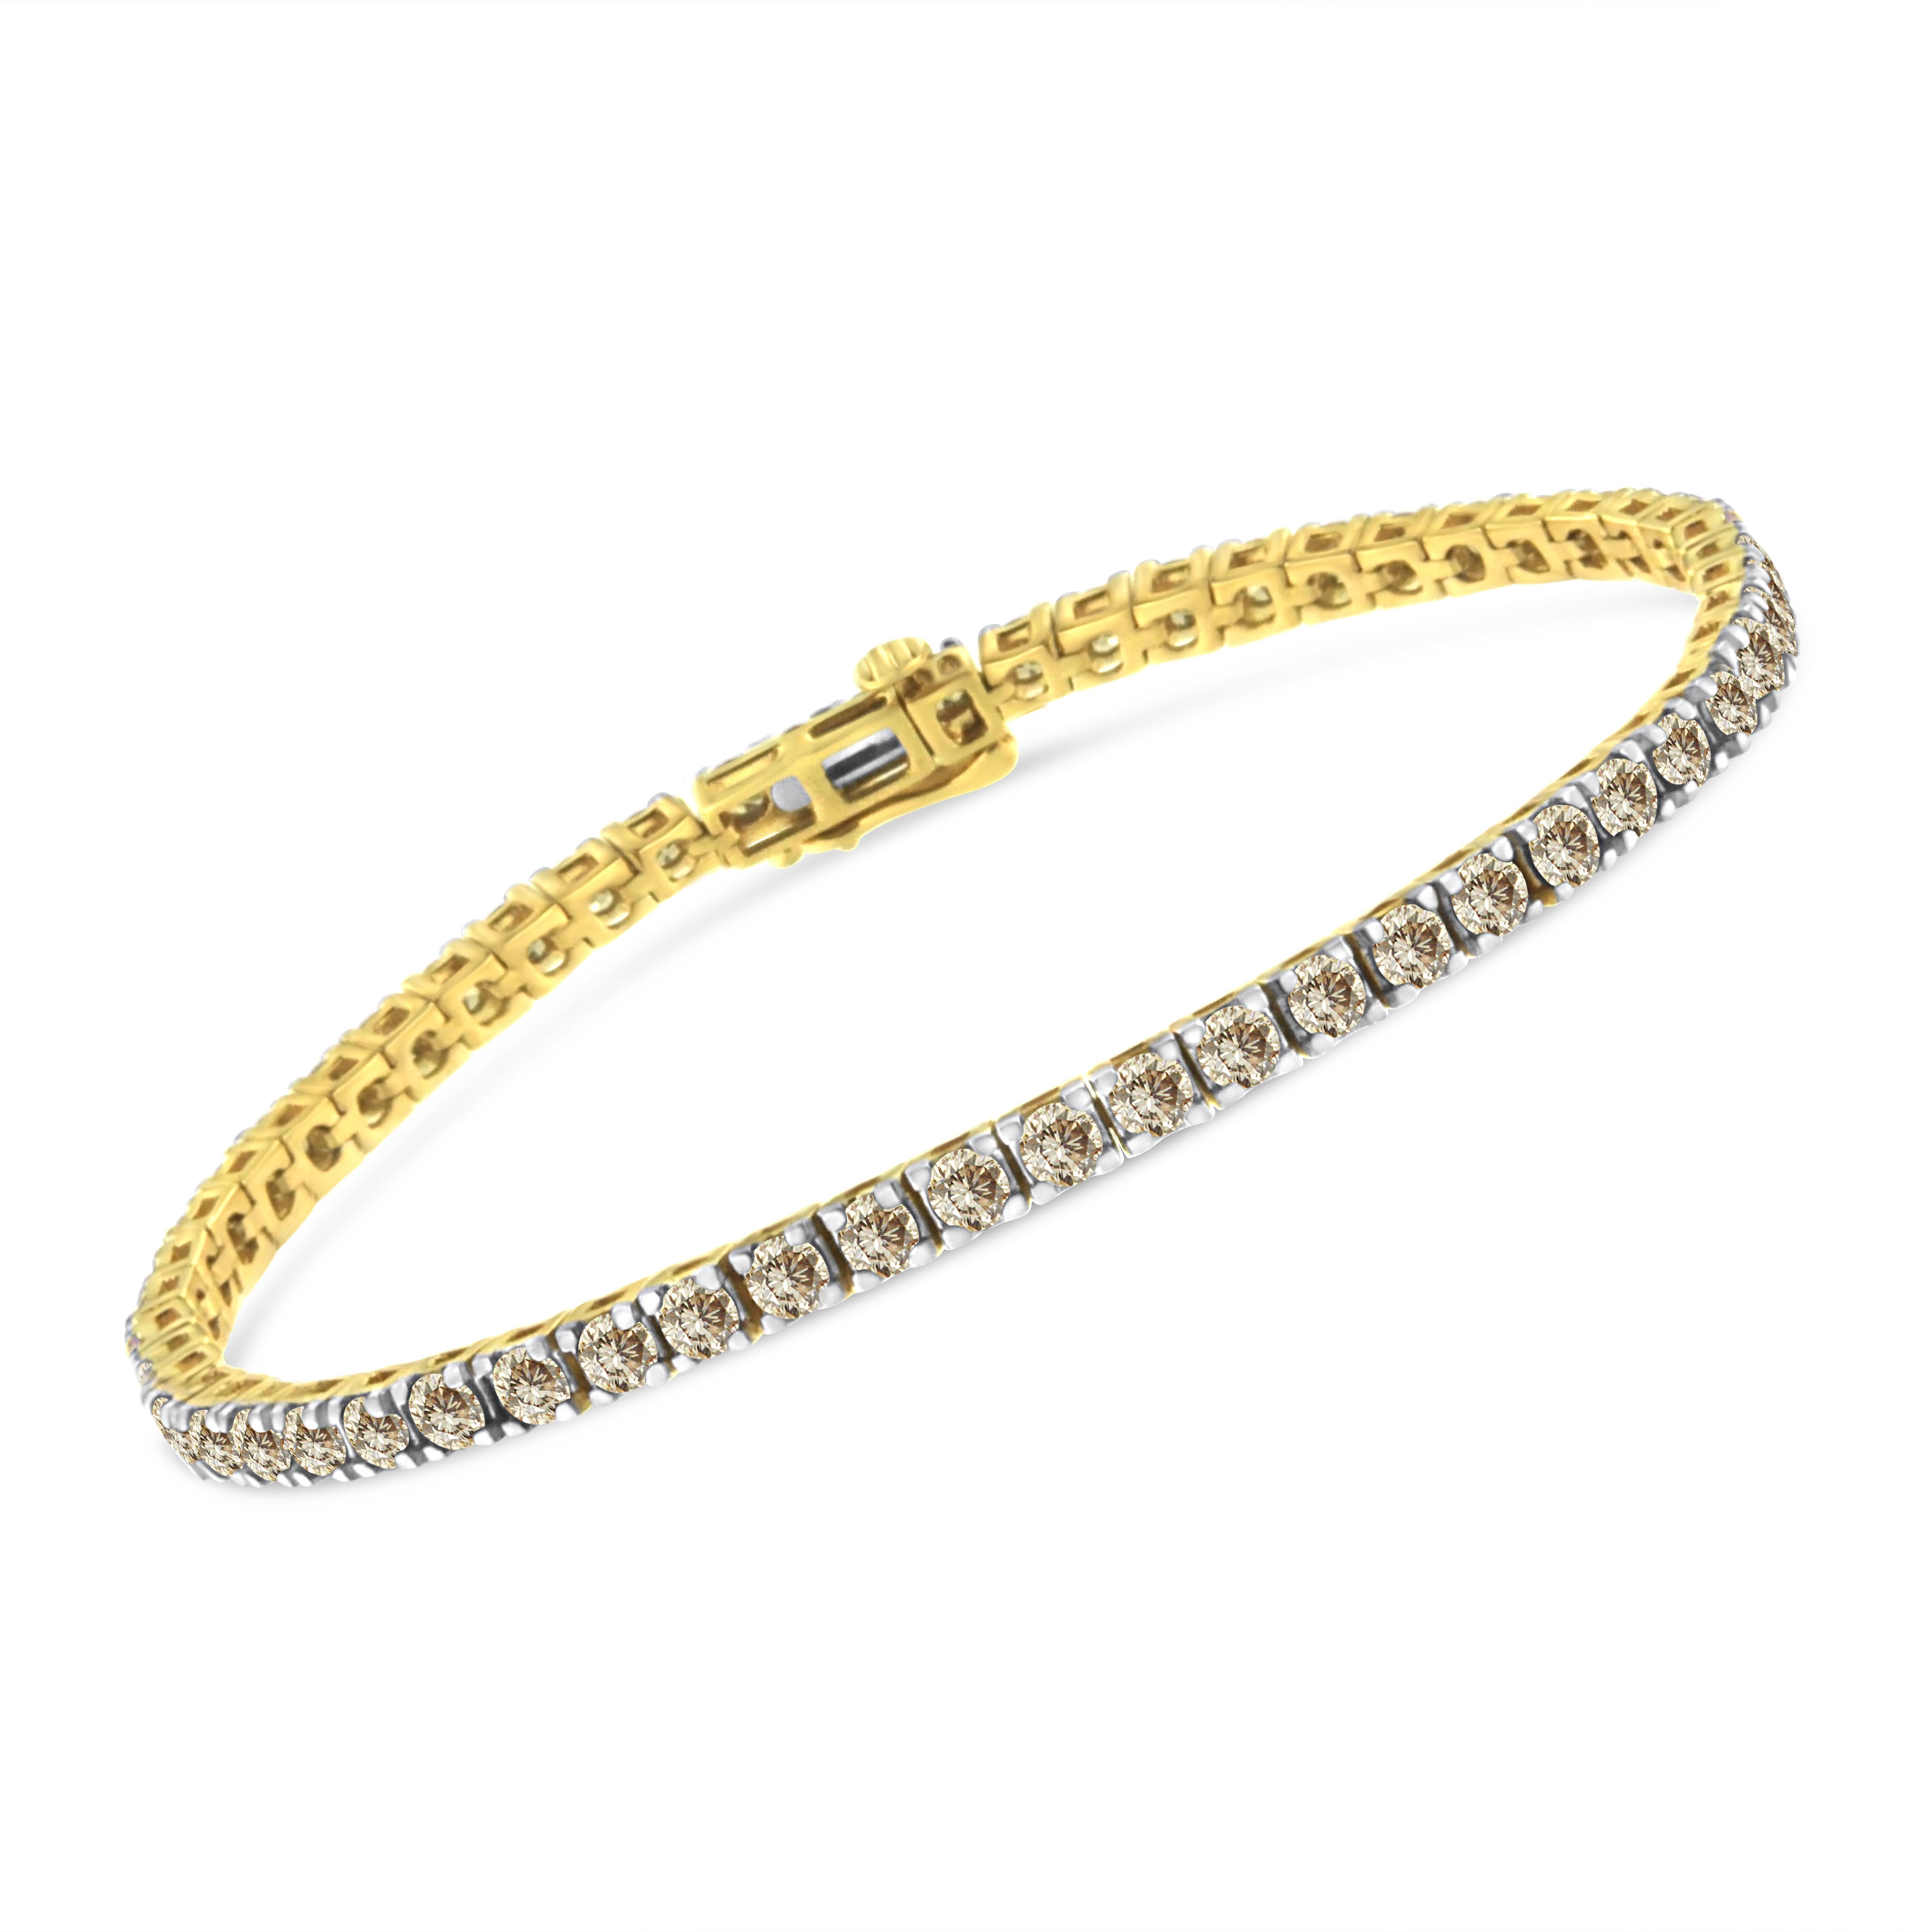 Ce bracelet tennis a un design classique et intemporel. Réalisé en argent sterling plaqué or jaune 14 carats, ce modèle comporte 5ct TDW de diamants ronds scintillants. 55 diamants sertis à la main composent cette pièce qui se ferme à l'aide d'une